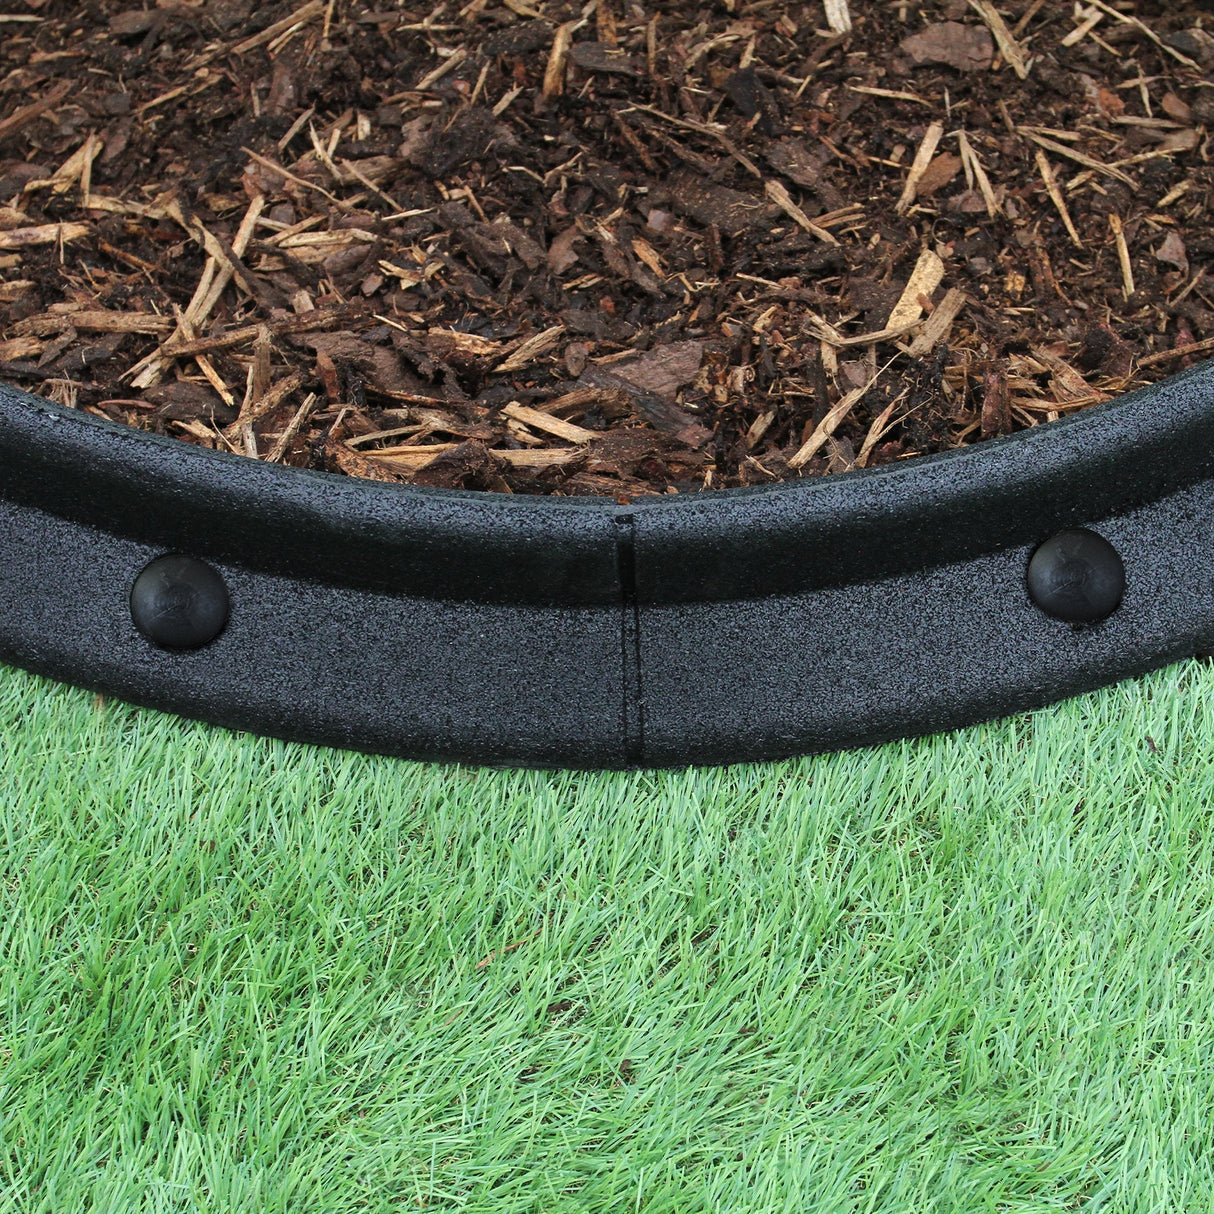 Flexible Lawn Edging Black 1.2m x 20